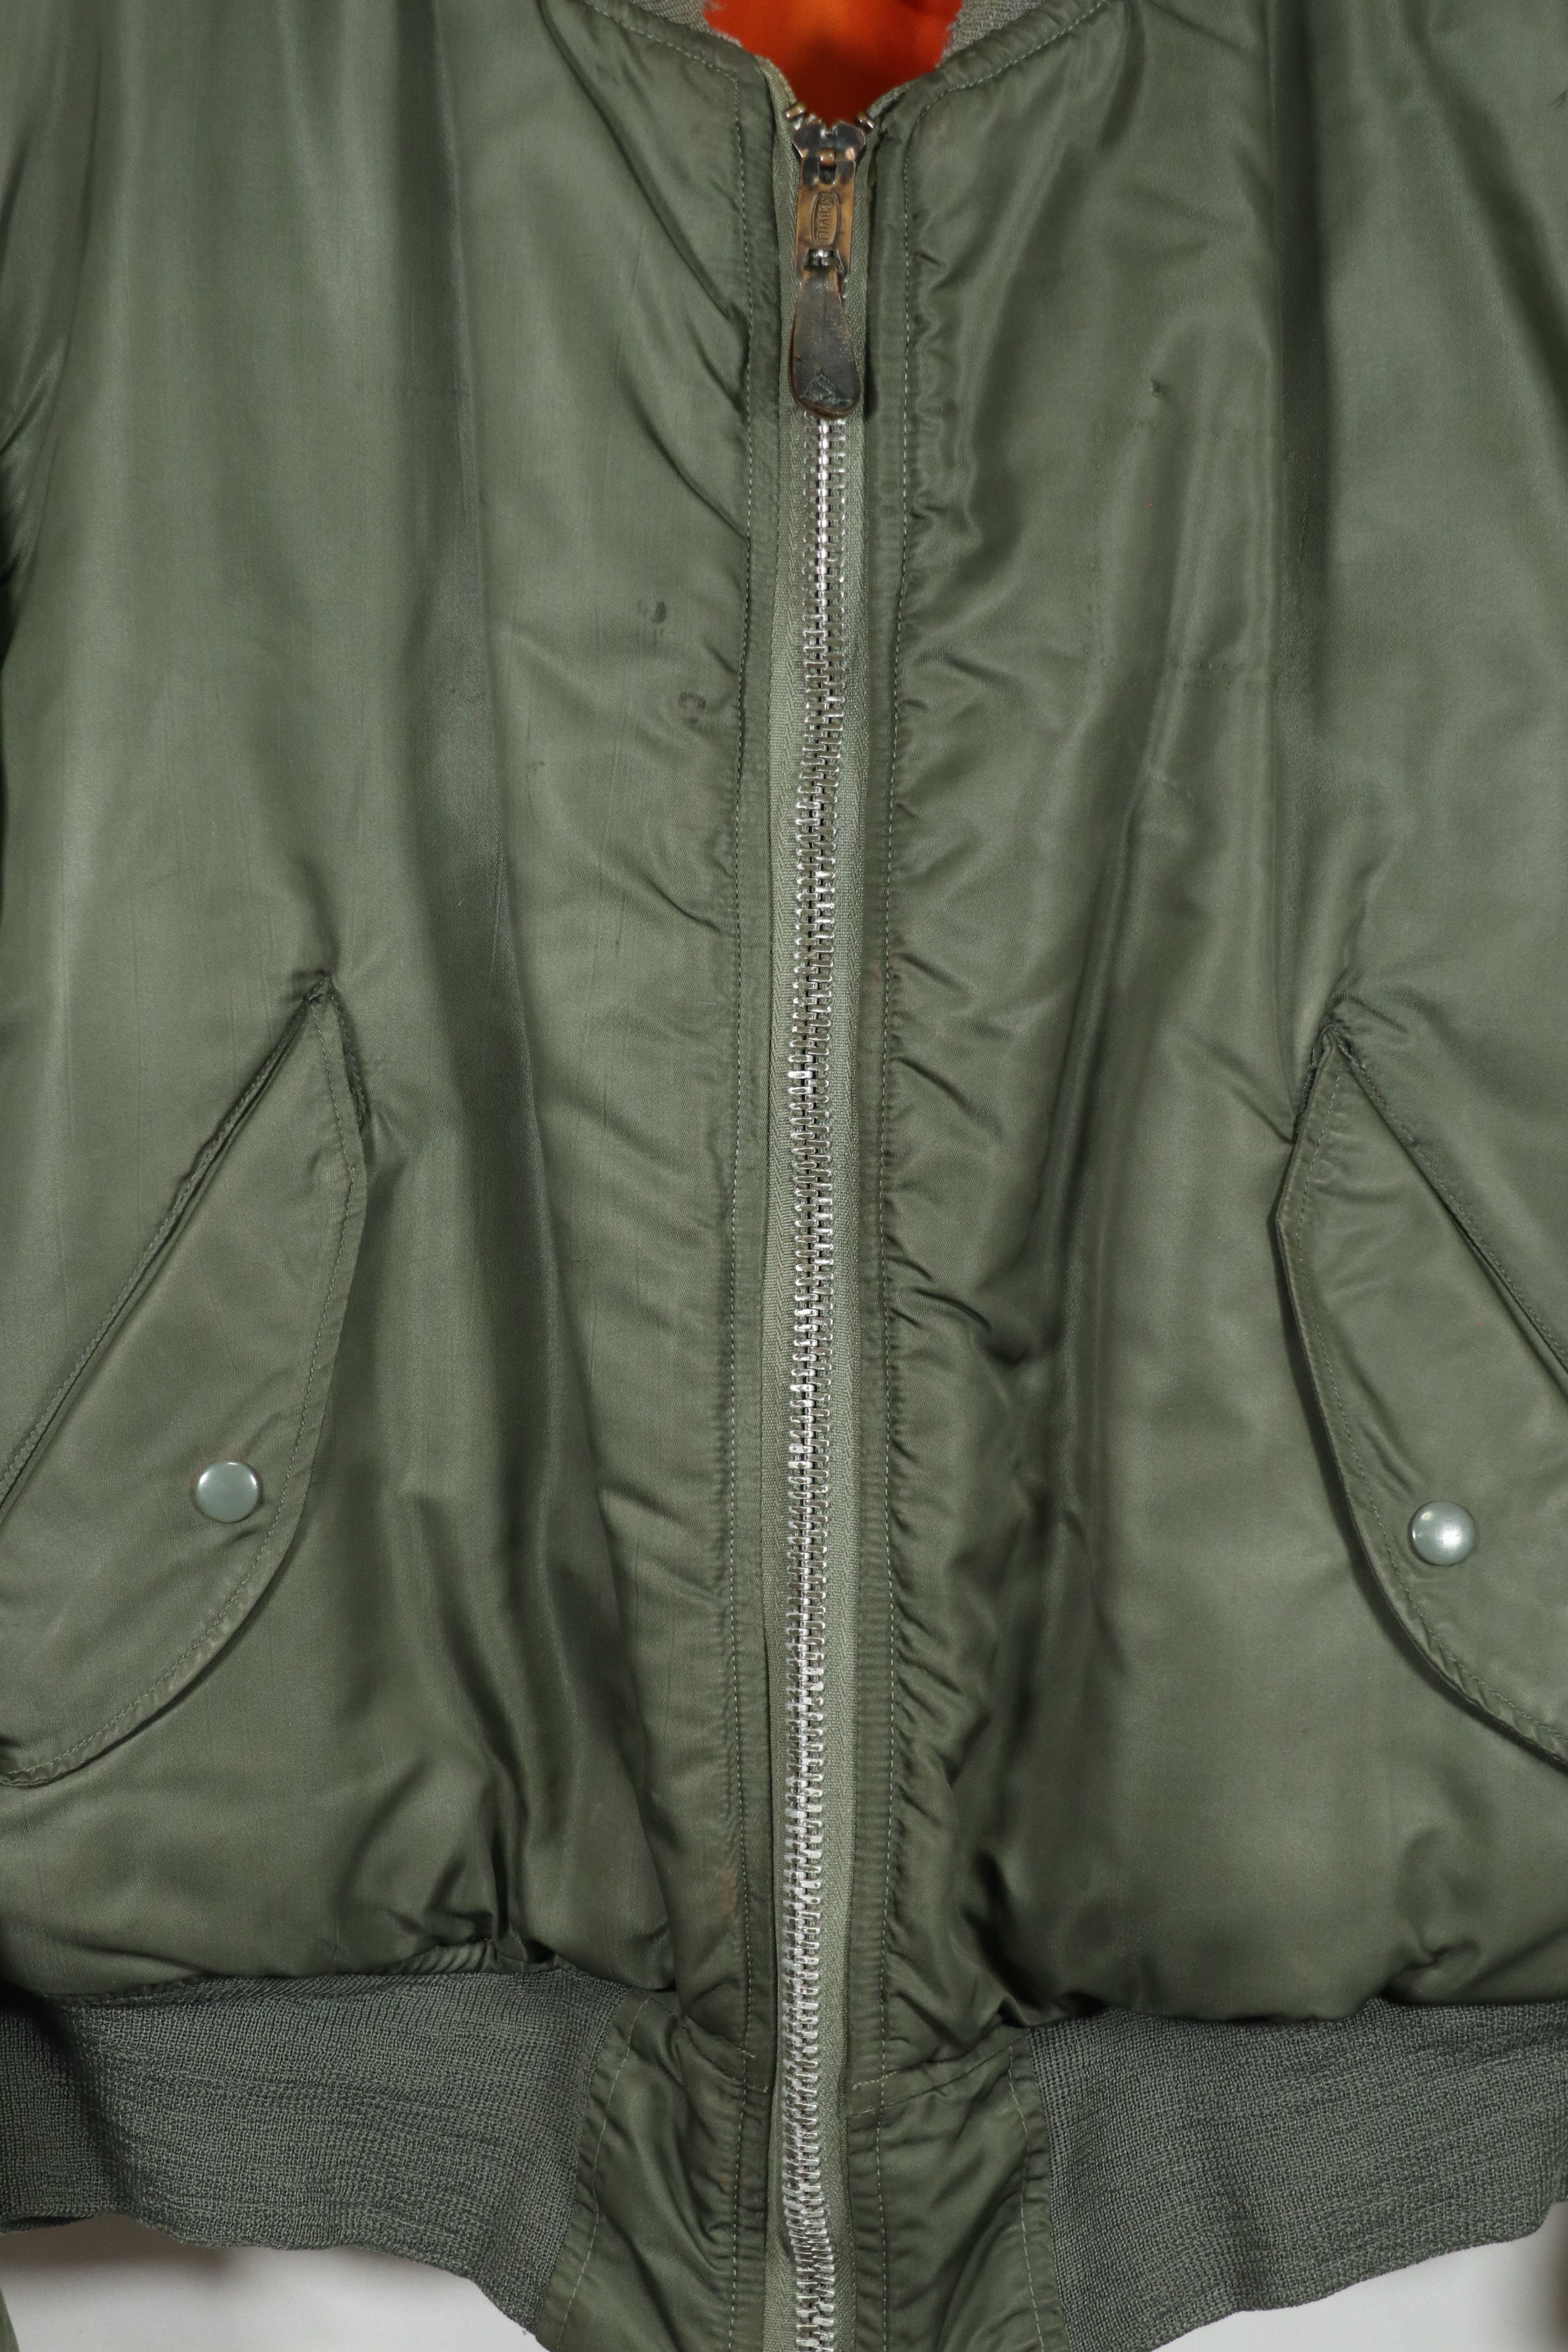 Real 1972 USAF flight jacket MA-1 used LARGE size